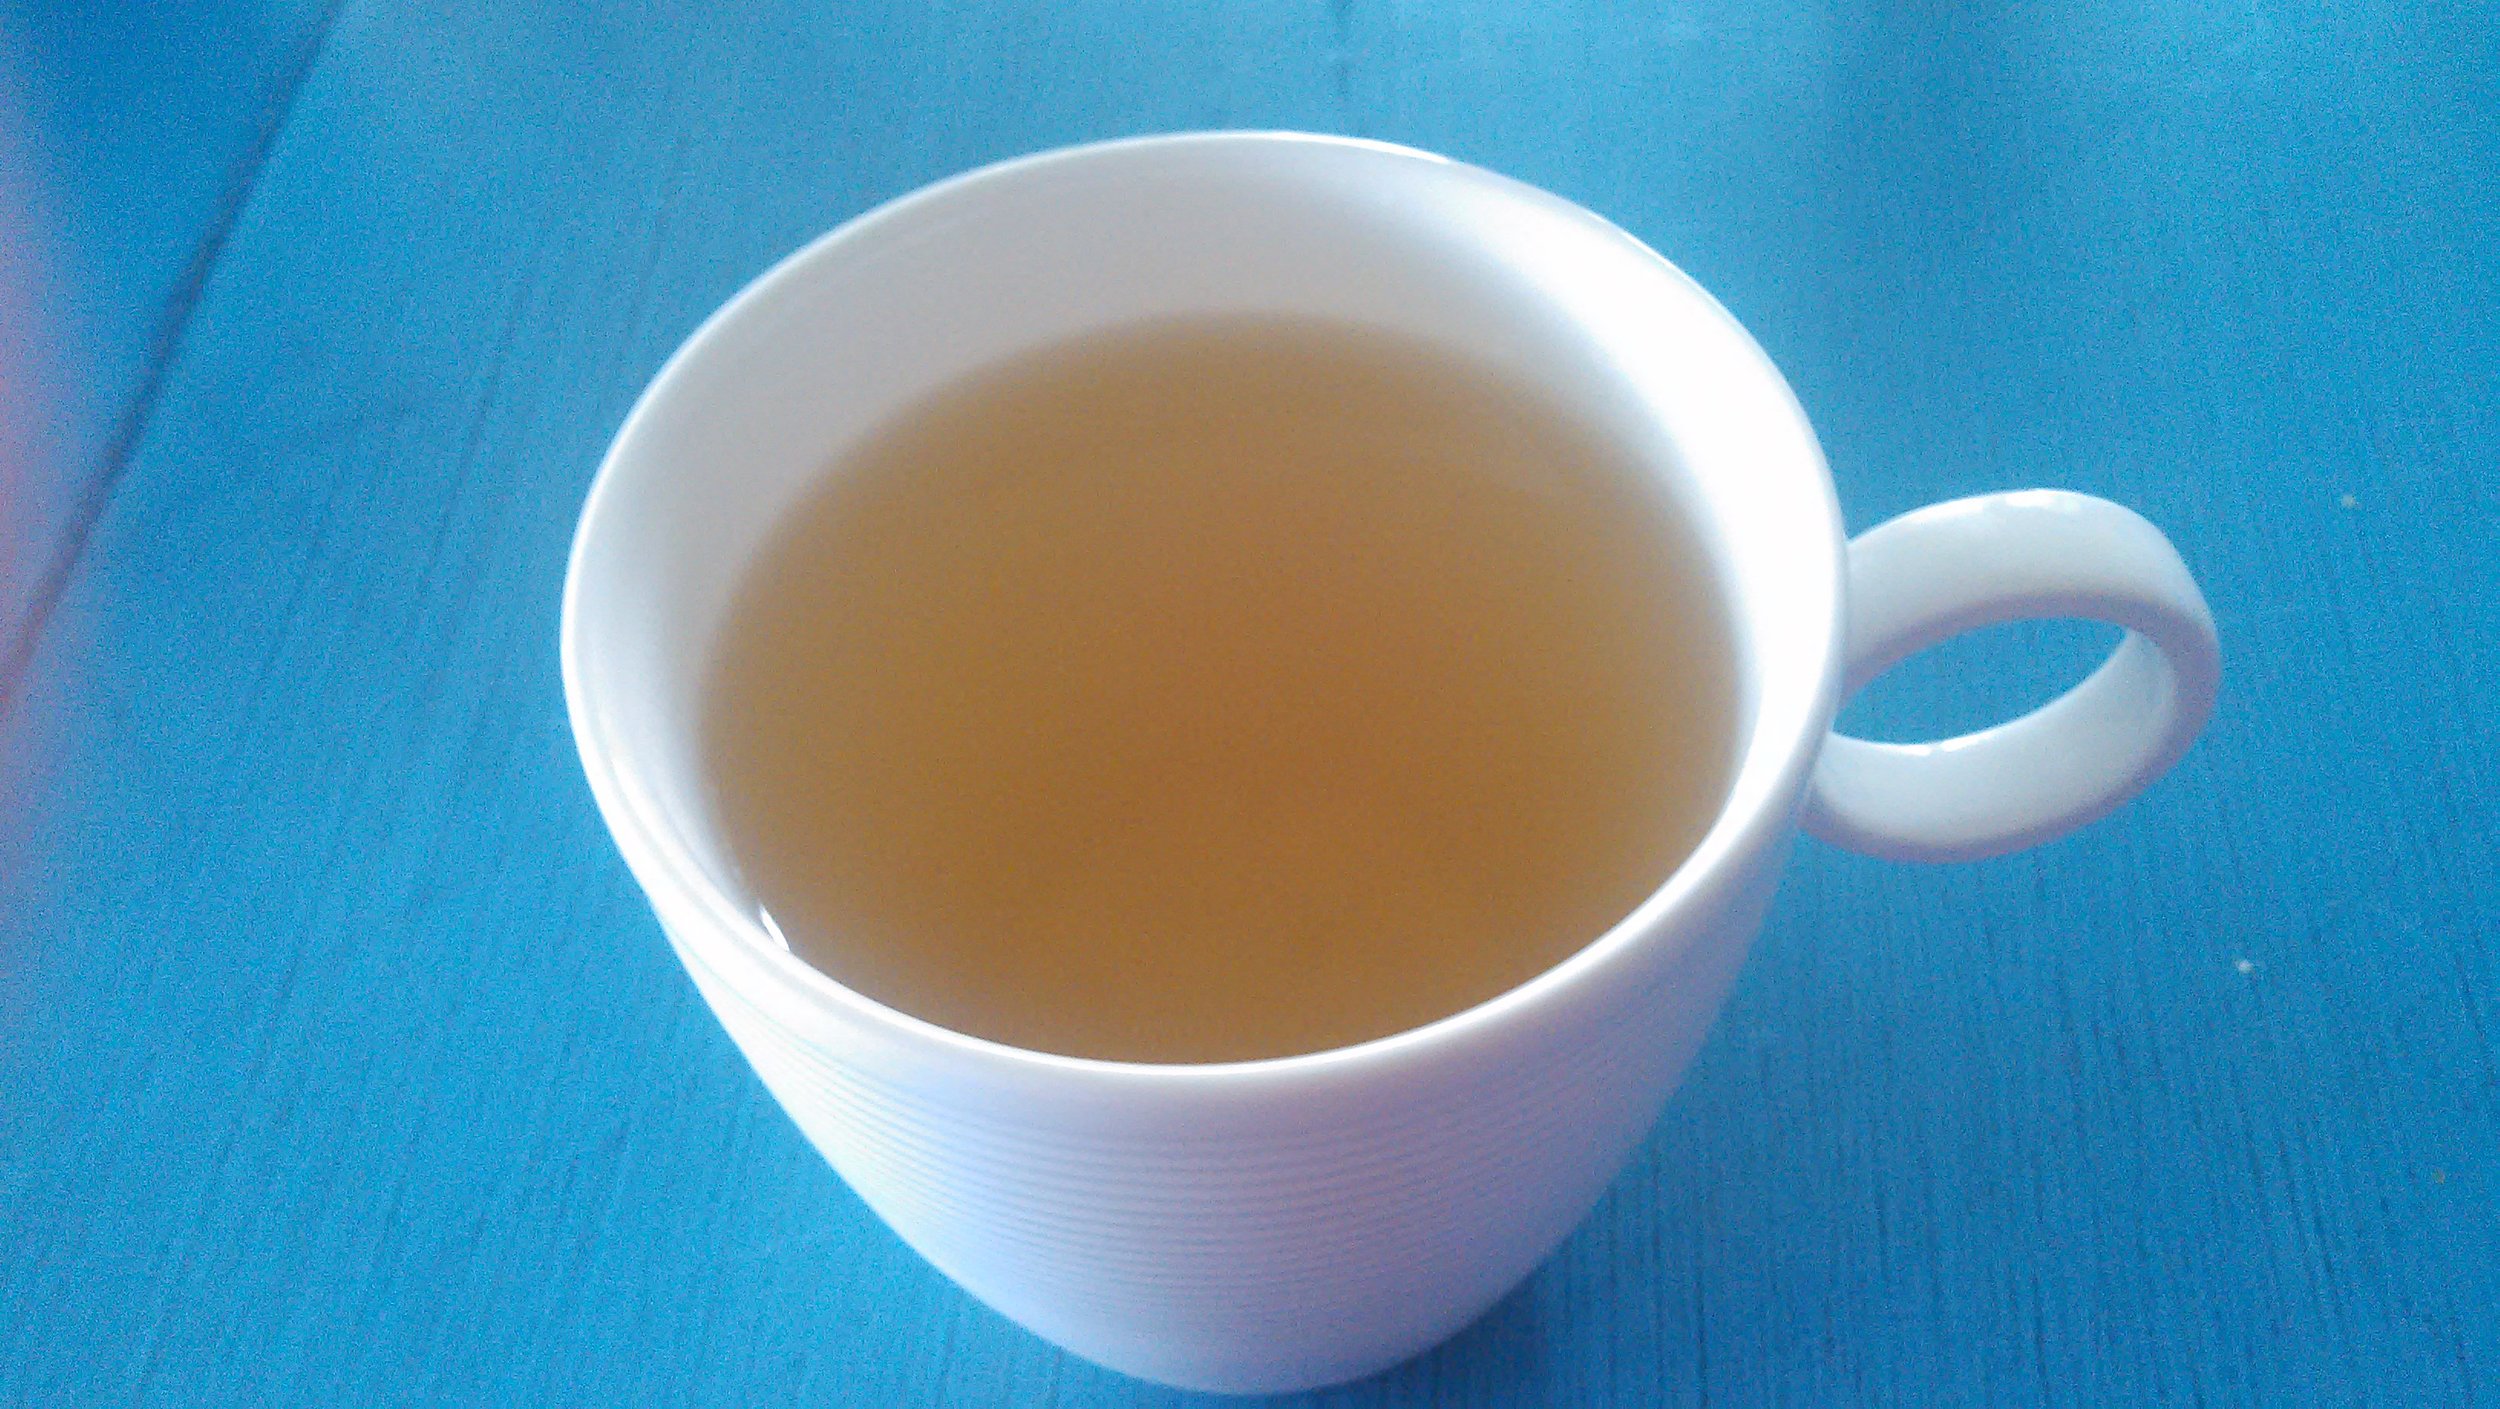 og i lokalmatens ånd, nyter vi en kopp løvetann te...